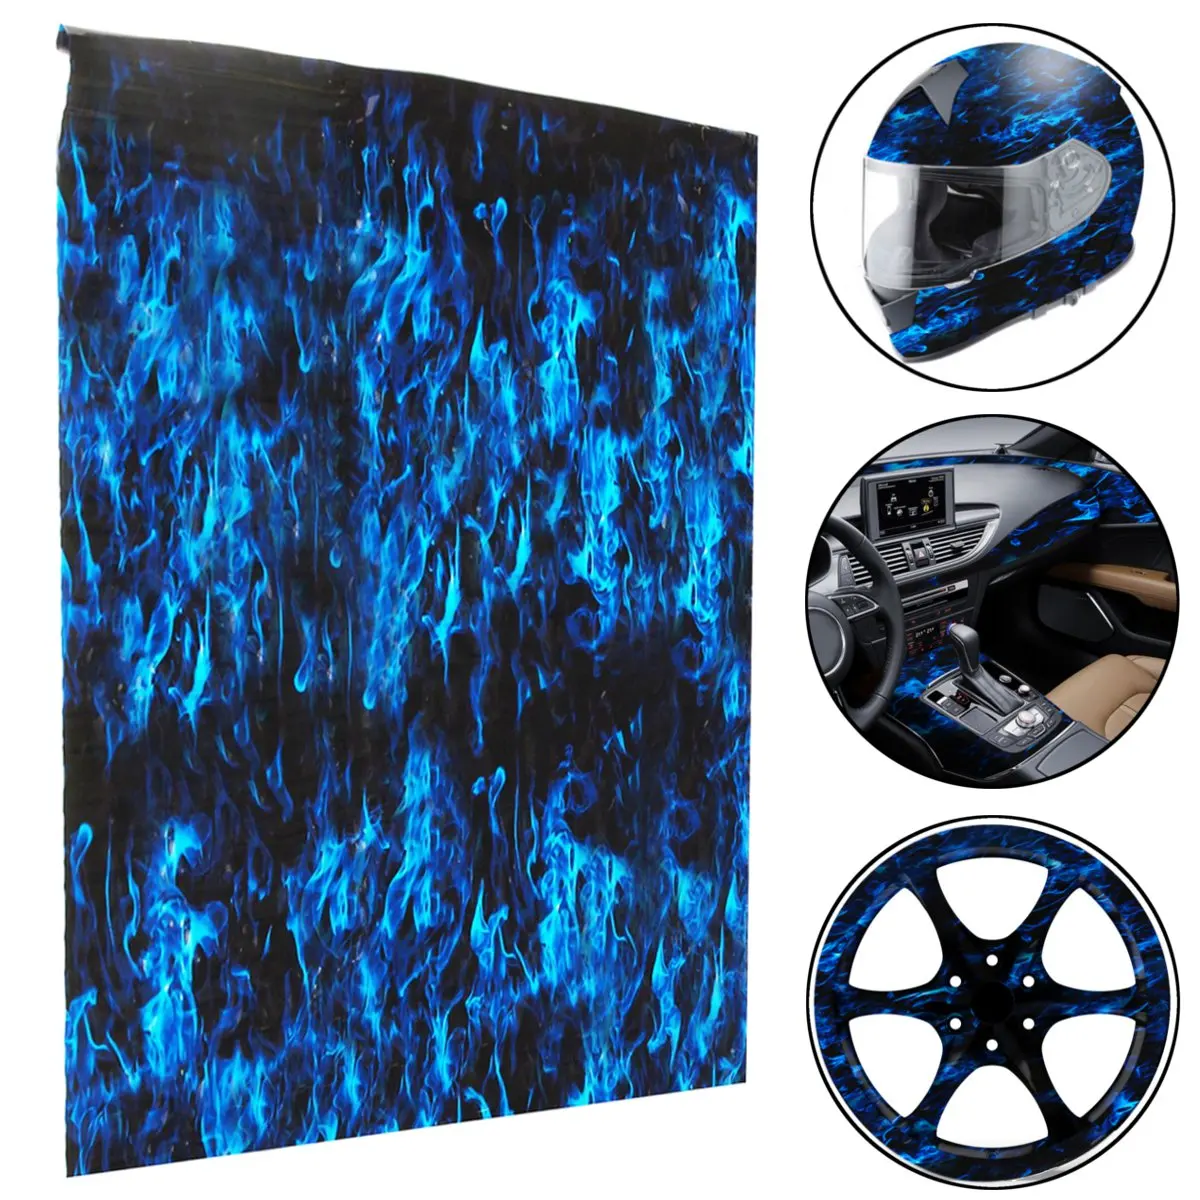 1 x Универсальная 50x100 см синяя PVA гидрографическая пленка для переноса воды печать Dip телефон компьютер автомобильная пленка для творчества Декор